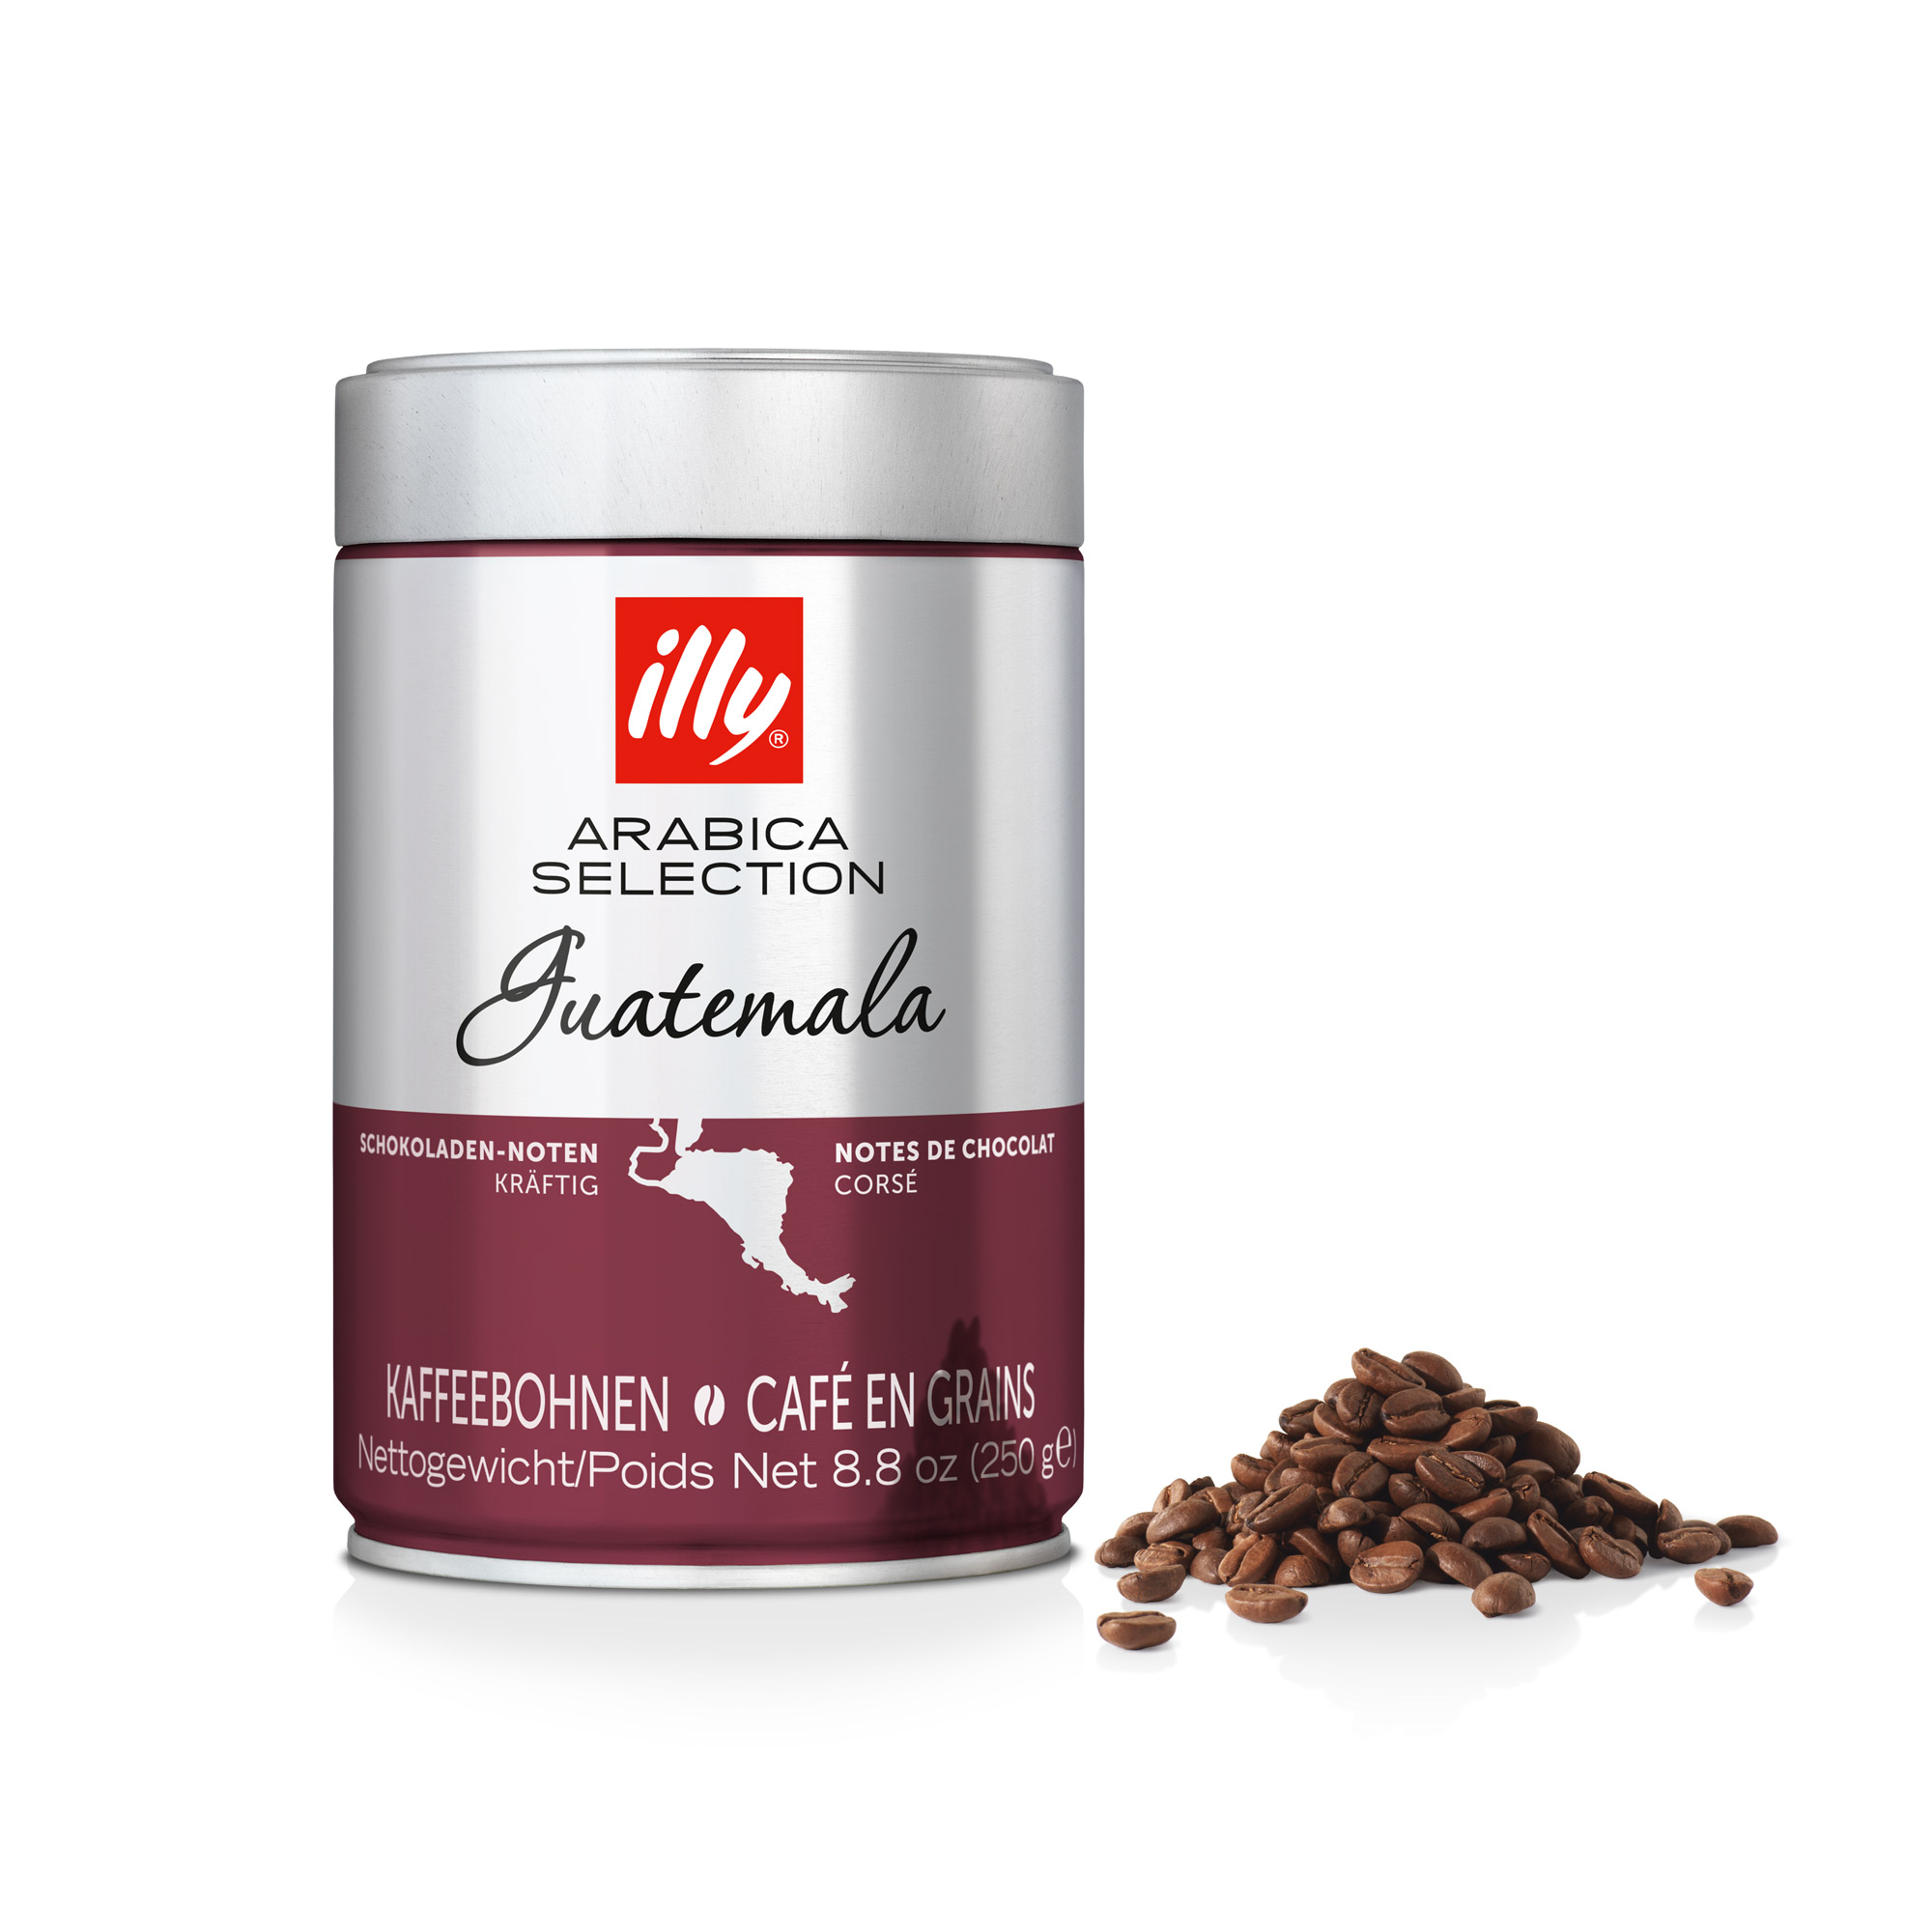 Espressobohnen der Arabica Selection aus Guatemala